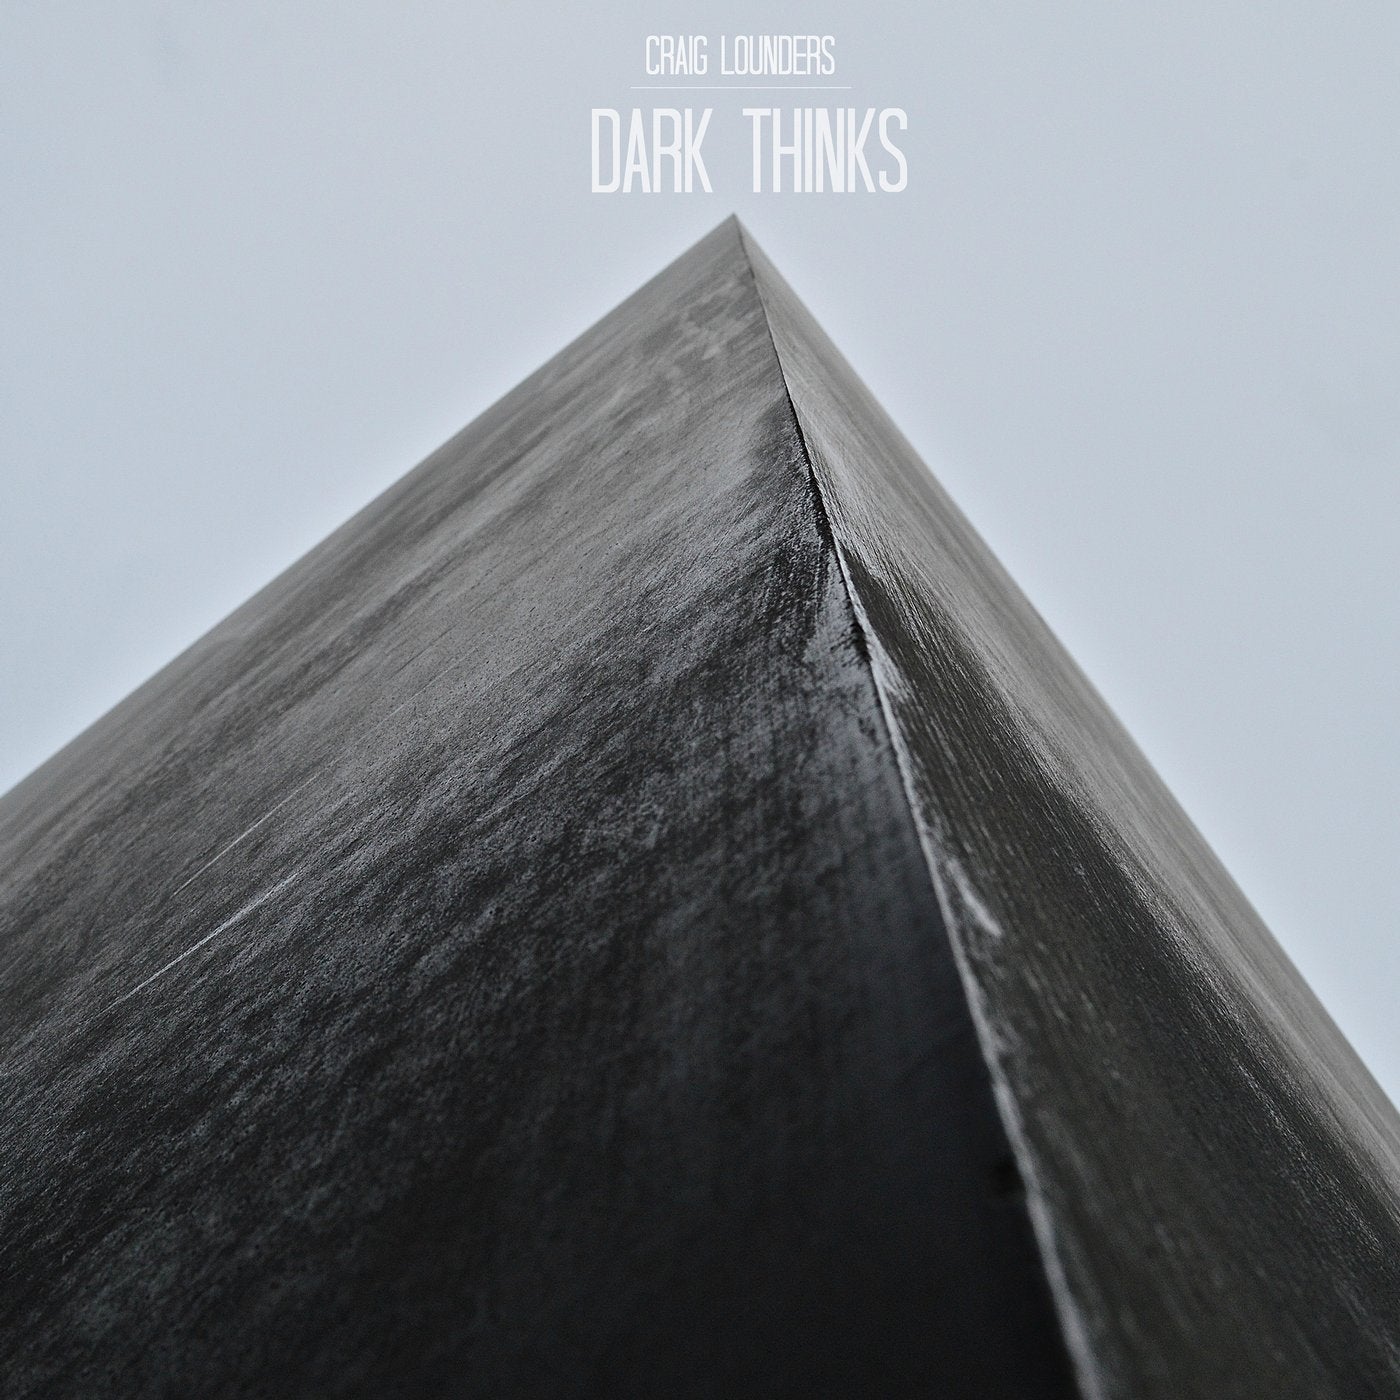 Dark Thinks